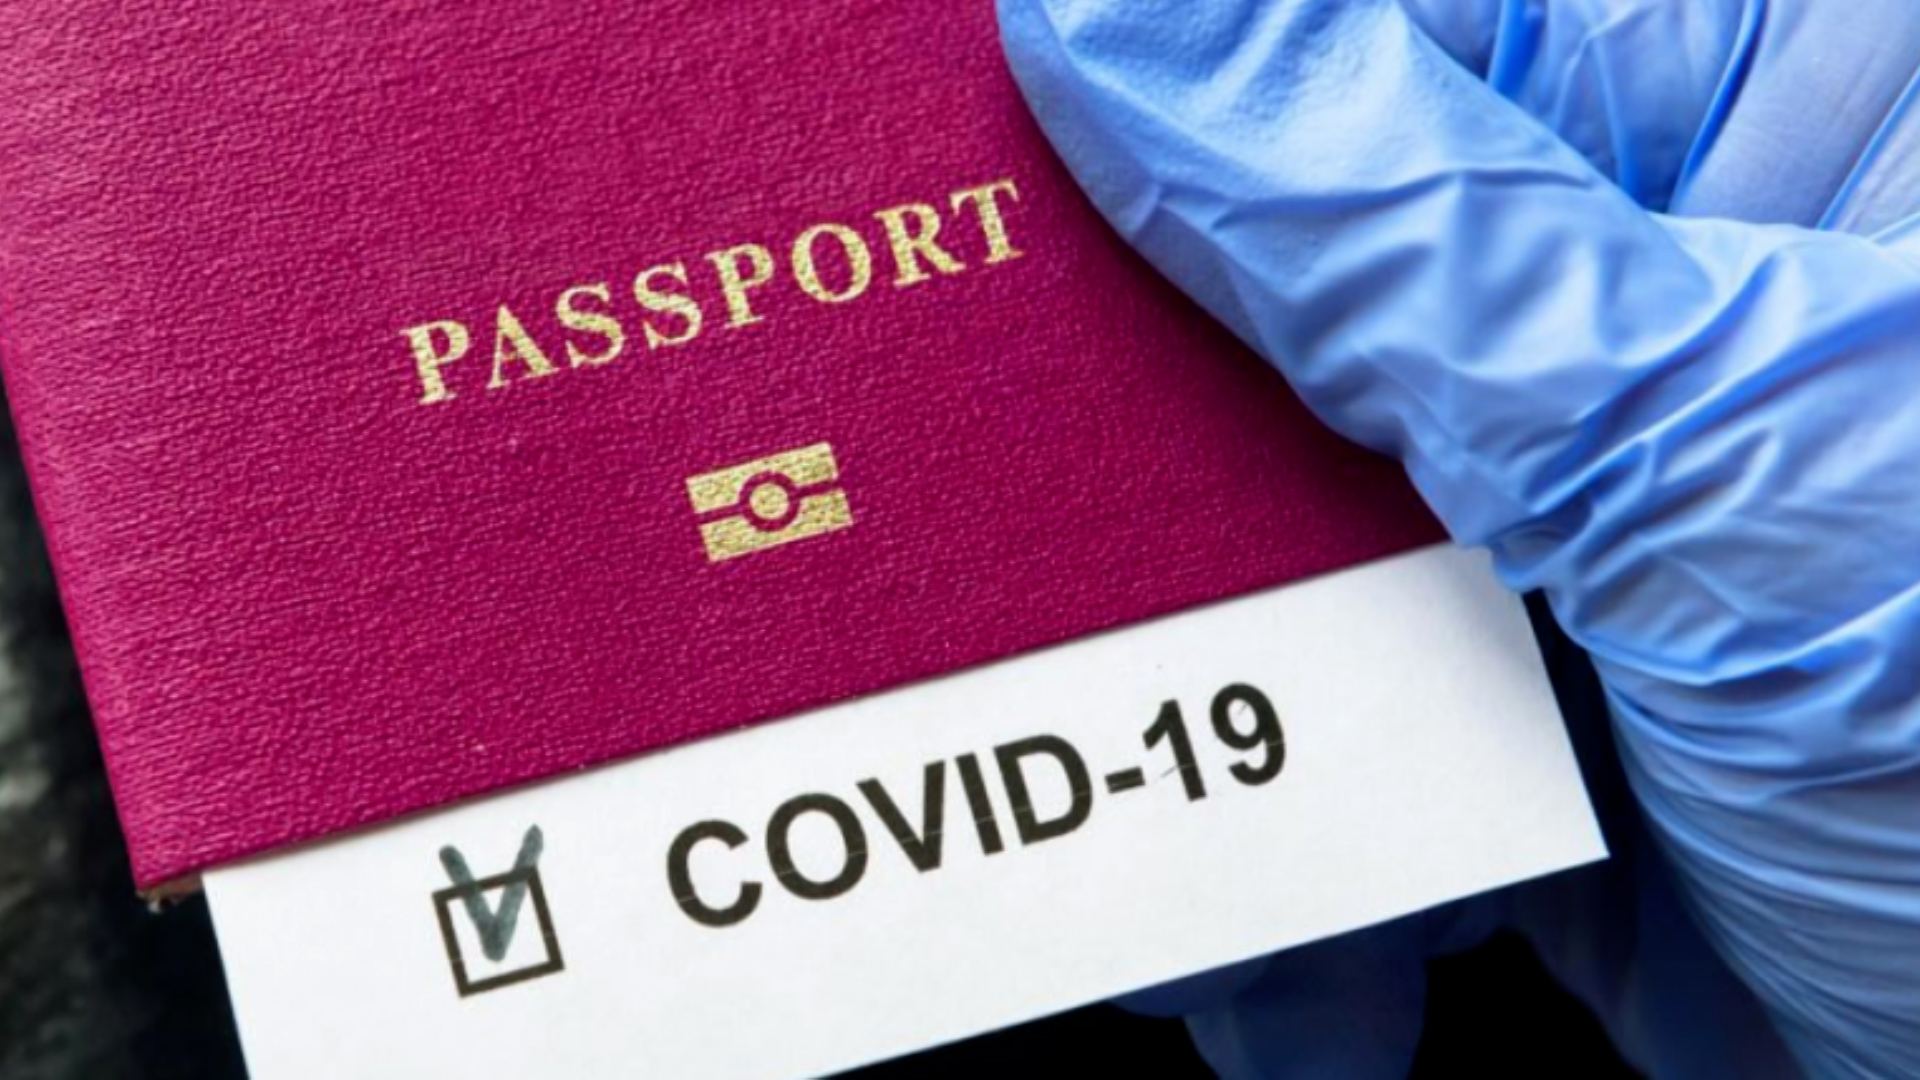 Saxta COVİD-19 pasportu verən şəxsə qarşı cinayət işi başlandı